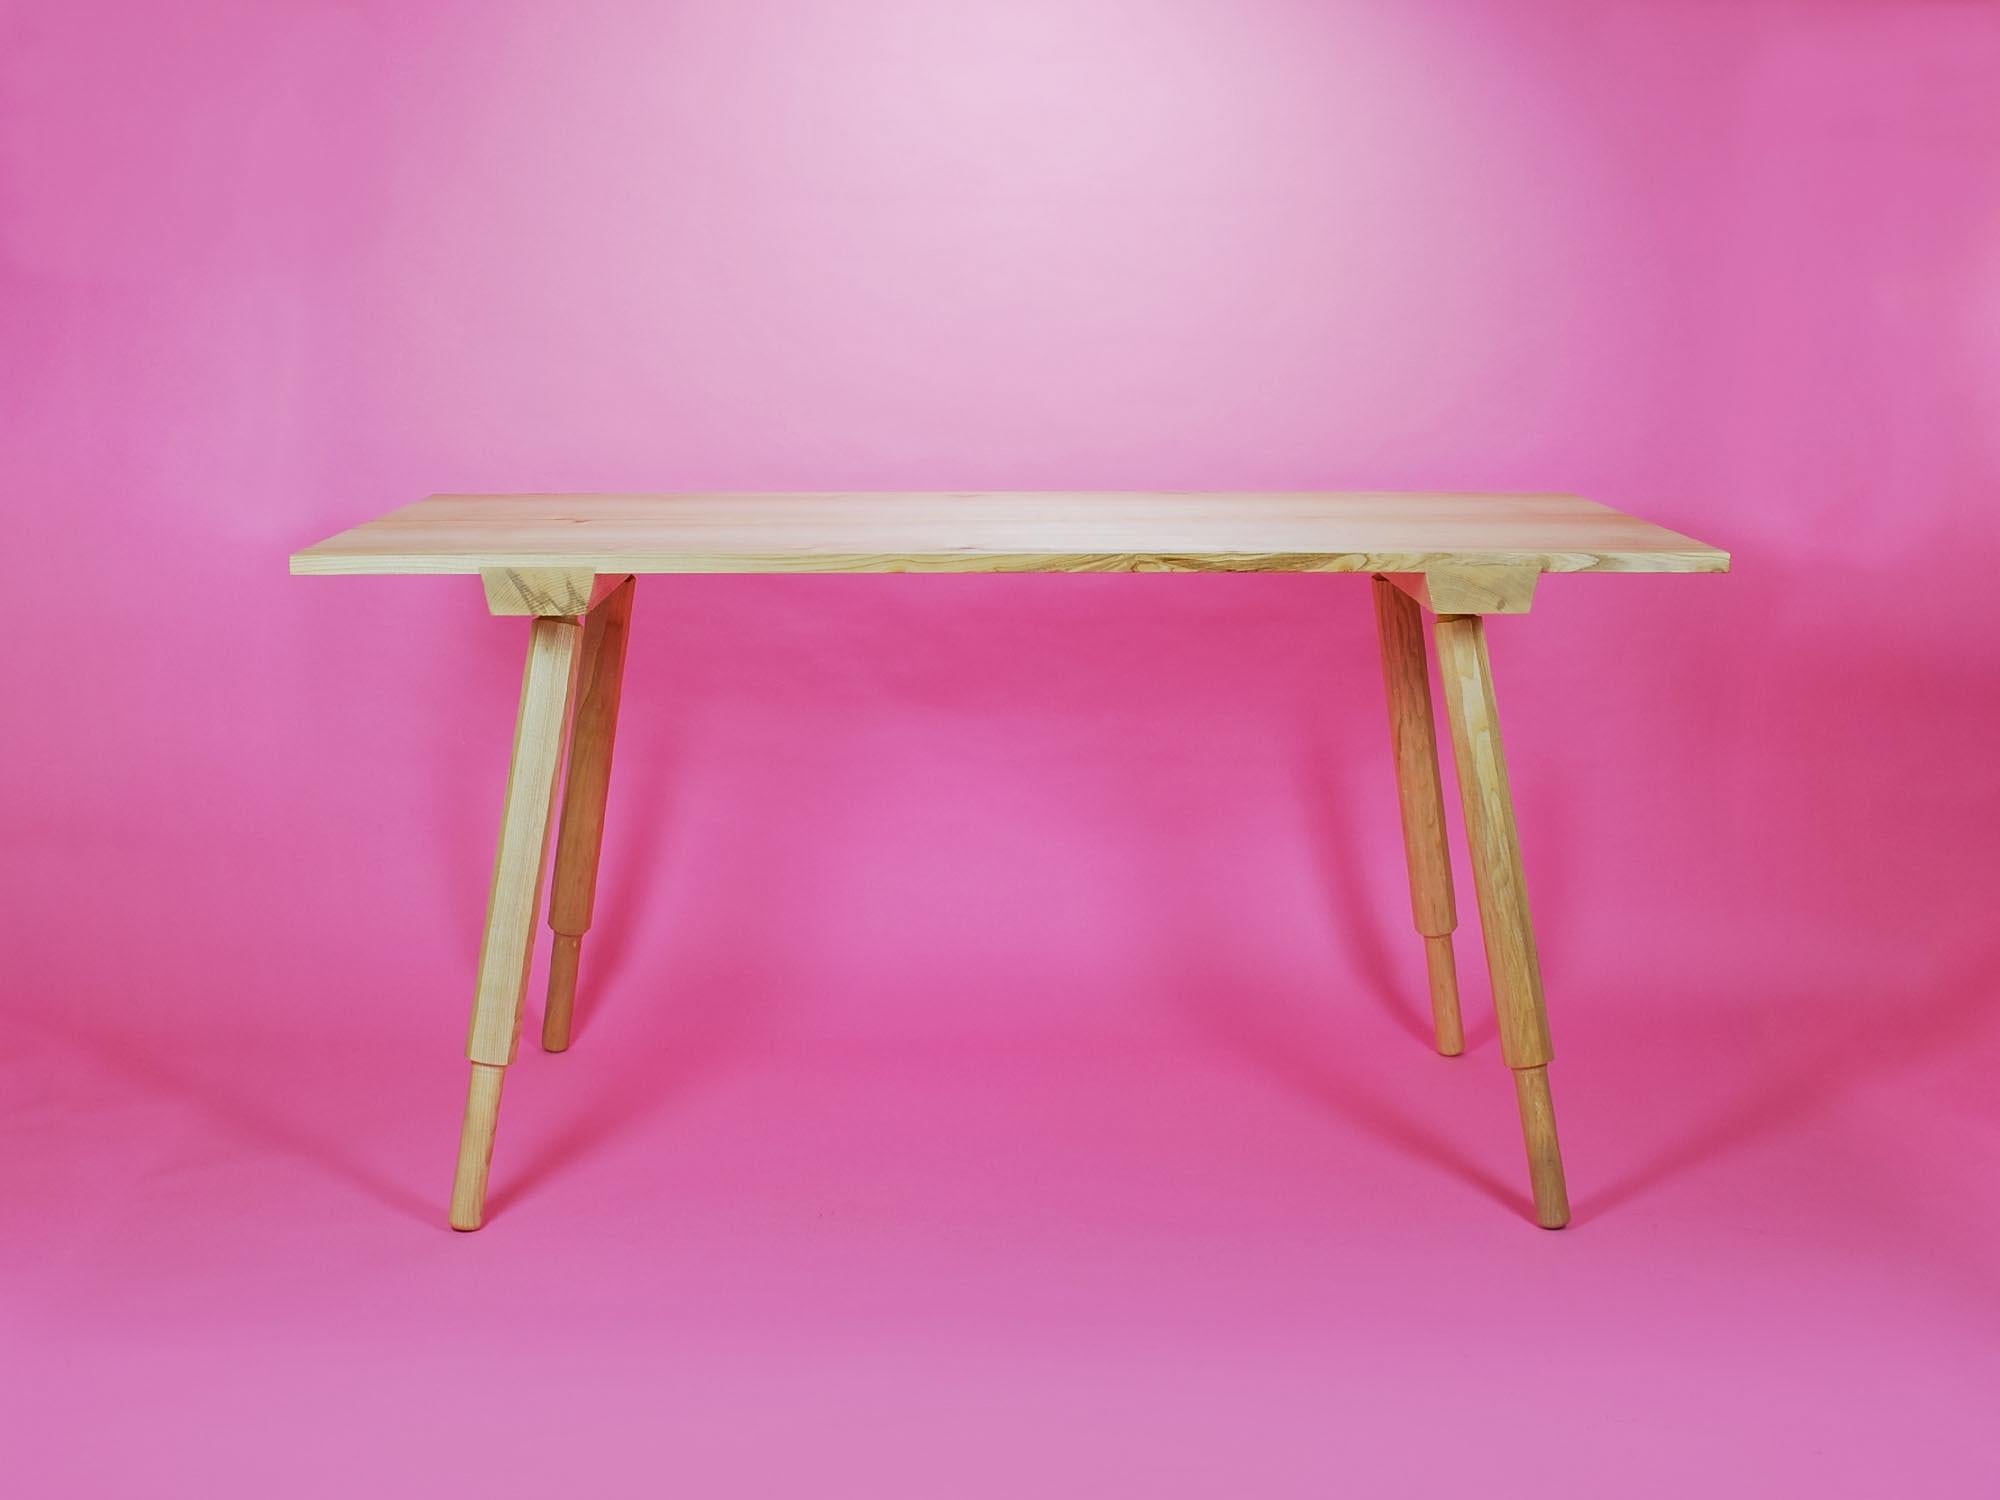 Table de salle à manger en frêne massif avec pieds vissés tournés à la main pour un assemblage facile.

La table est fabriquée en frêne anglais. Les pieds sont conçus avec une forme octogonale unique avec des pieds ronds et lisses à la base.

Les